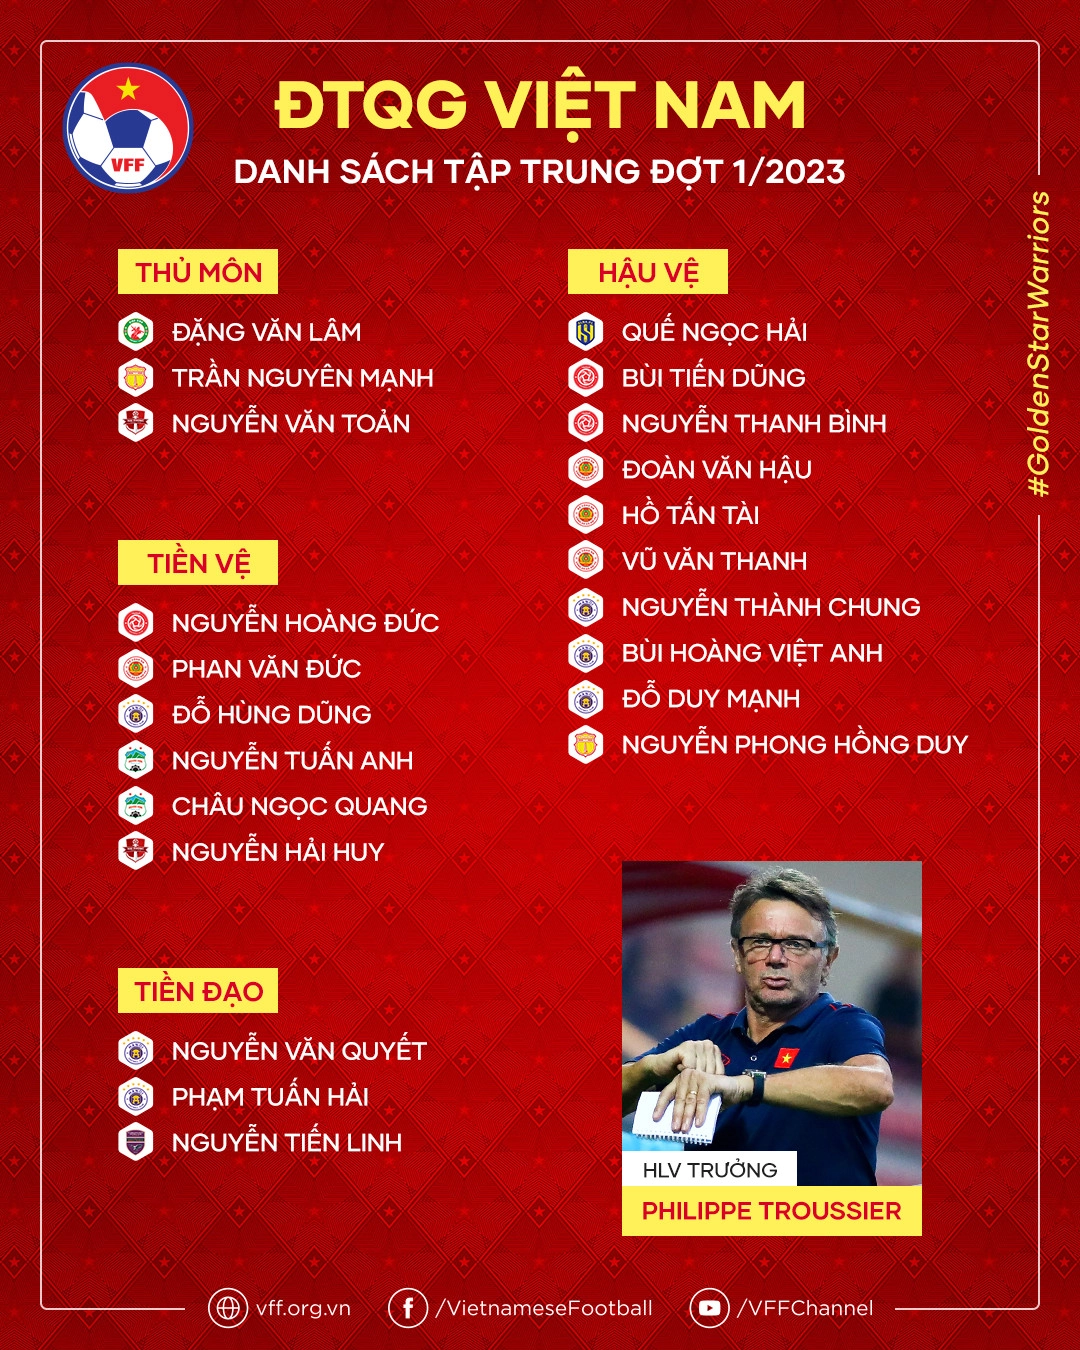 Vì mục tiêu World Cup, HLV Troussier sẽ loại bỏ nhiều 'công thần' để xây dựng tuyển Việt Nam mới? - Ảnh 3.